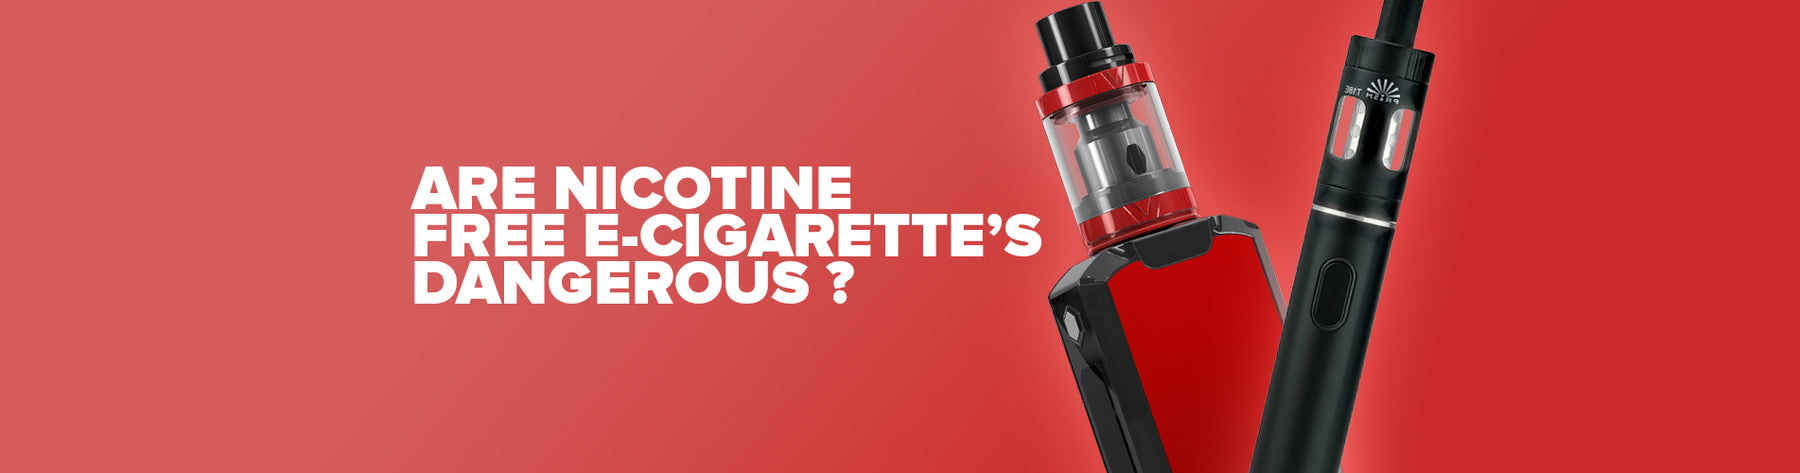 Are Nicotine-free E-cigarettes Dangerous?